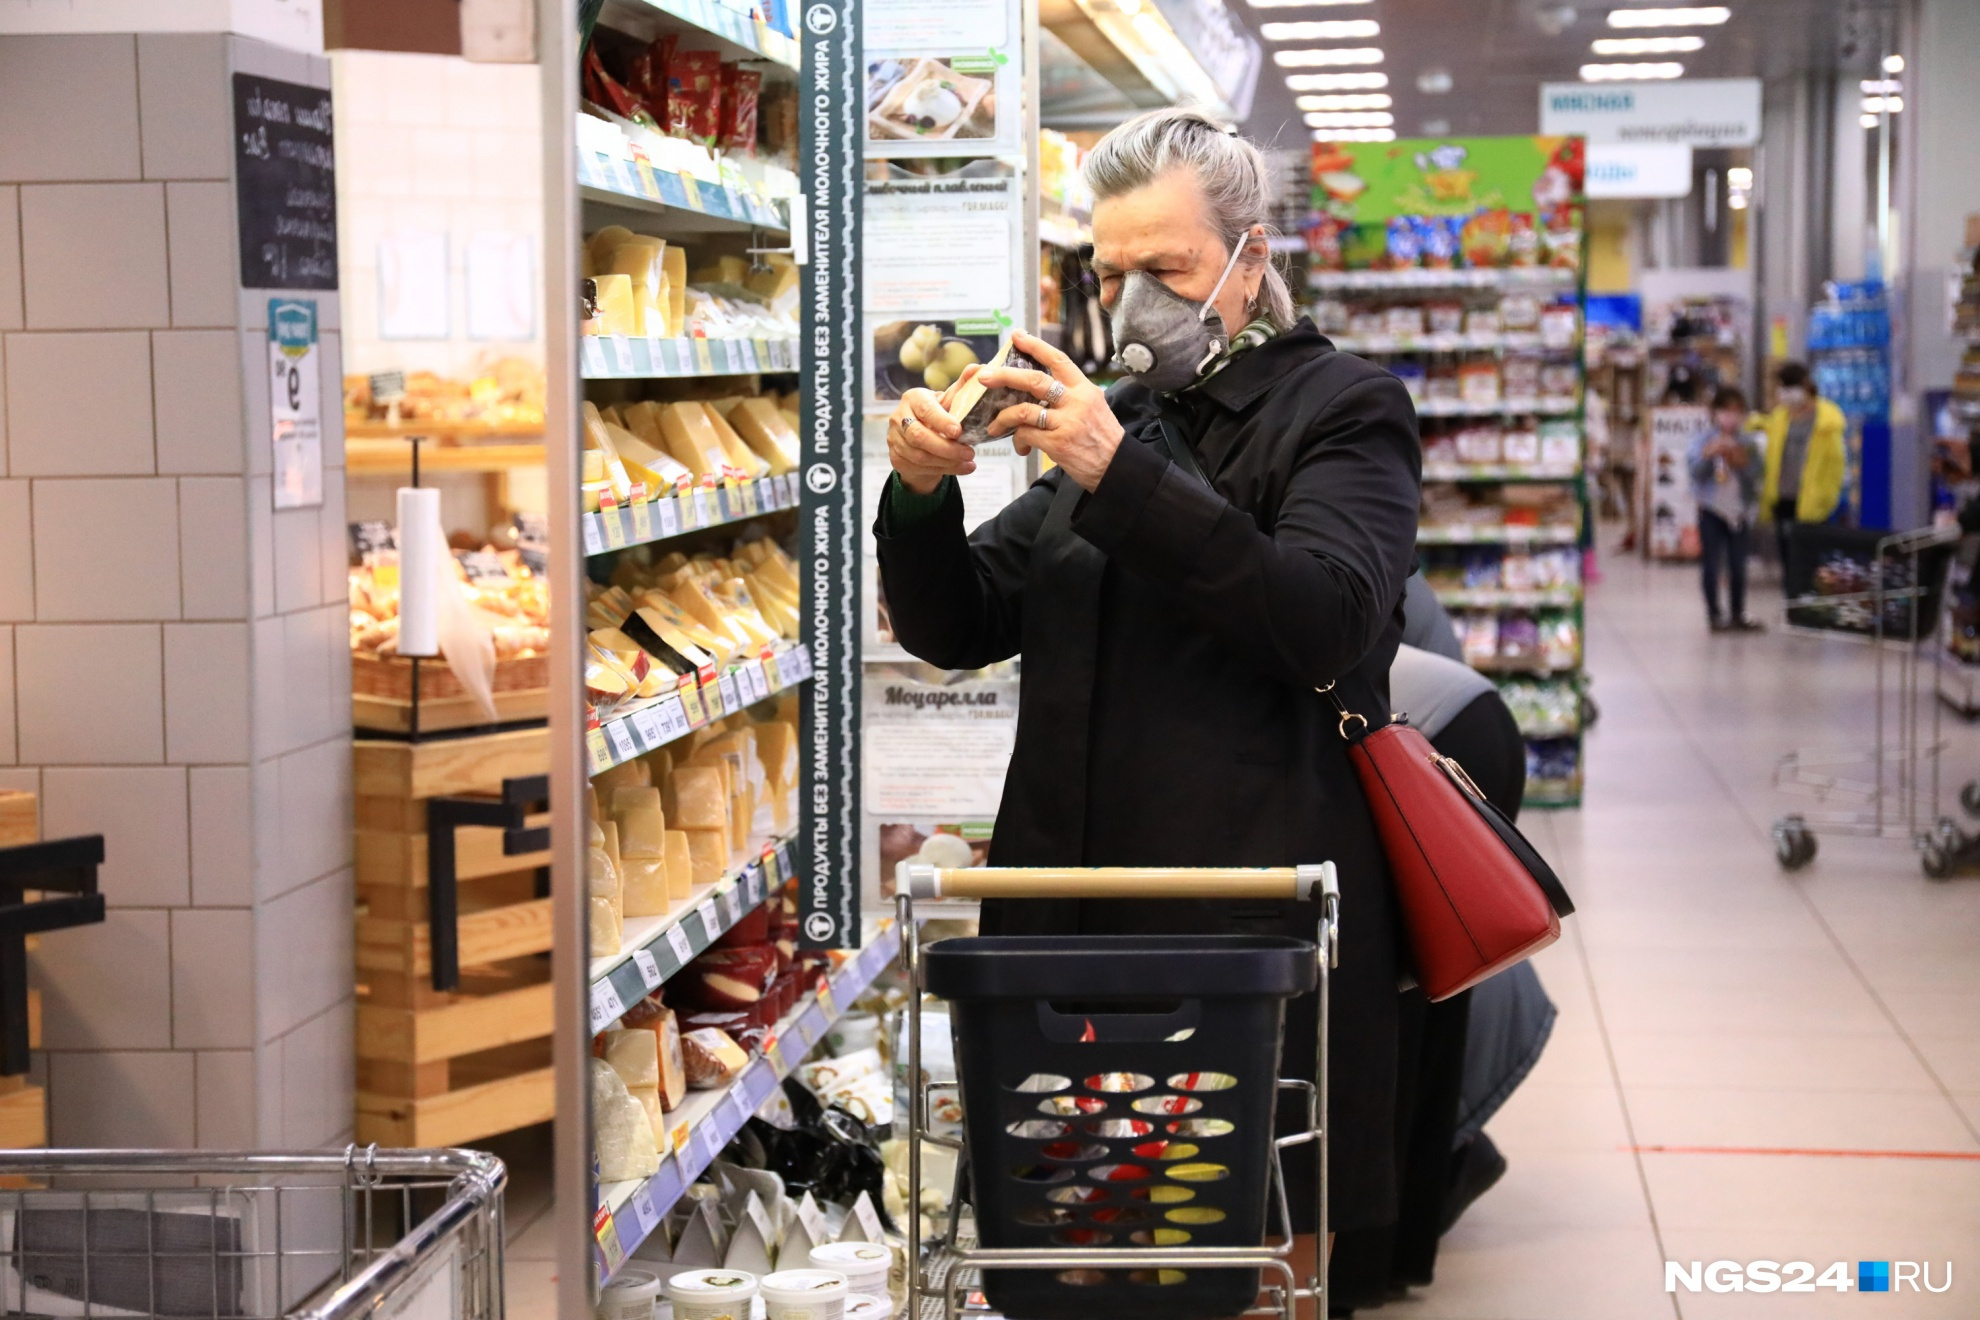 Споры между красноярцами о том, в каком супермаркете дешевле закупаться, не утихают